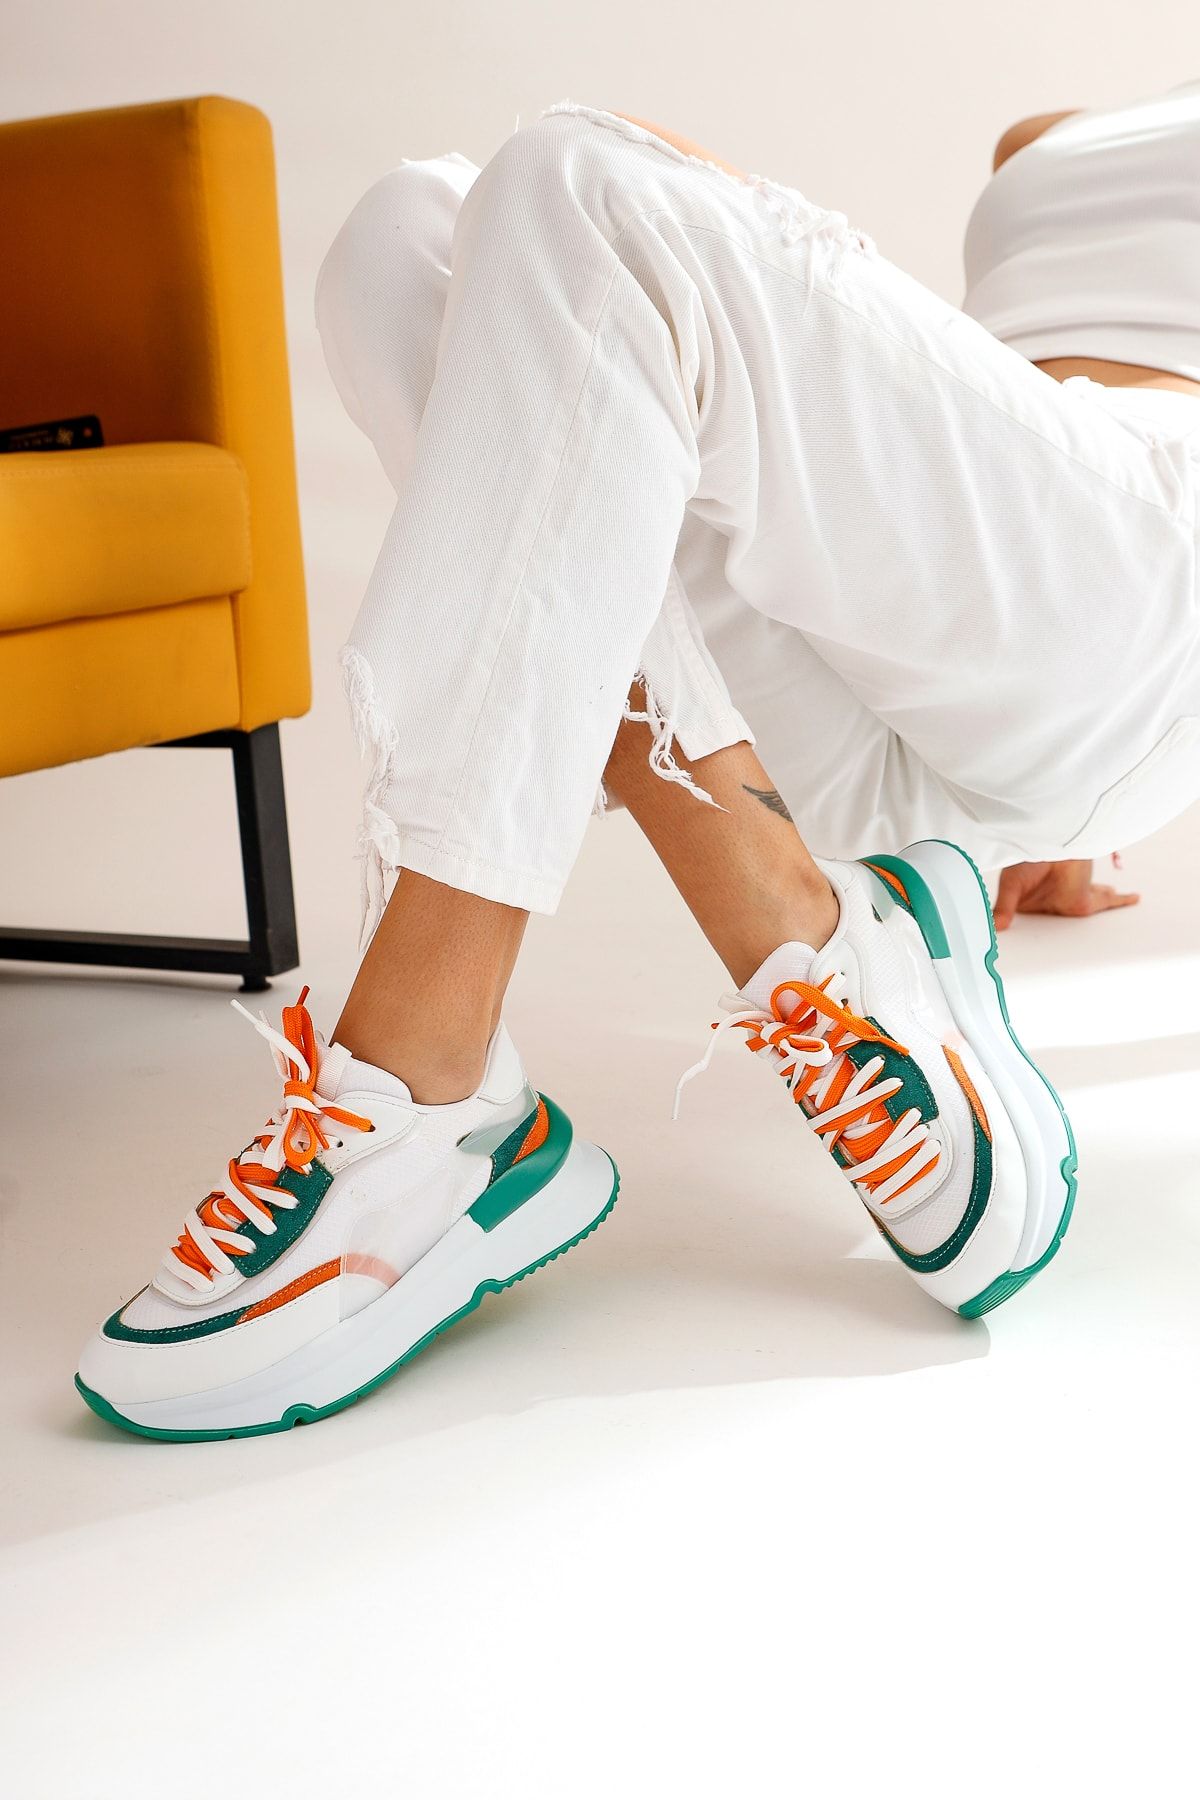 Limoya Luam Beyaz Yeşil Sneakers Spor Ayakkabı